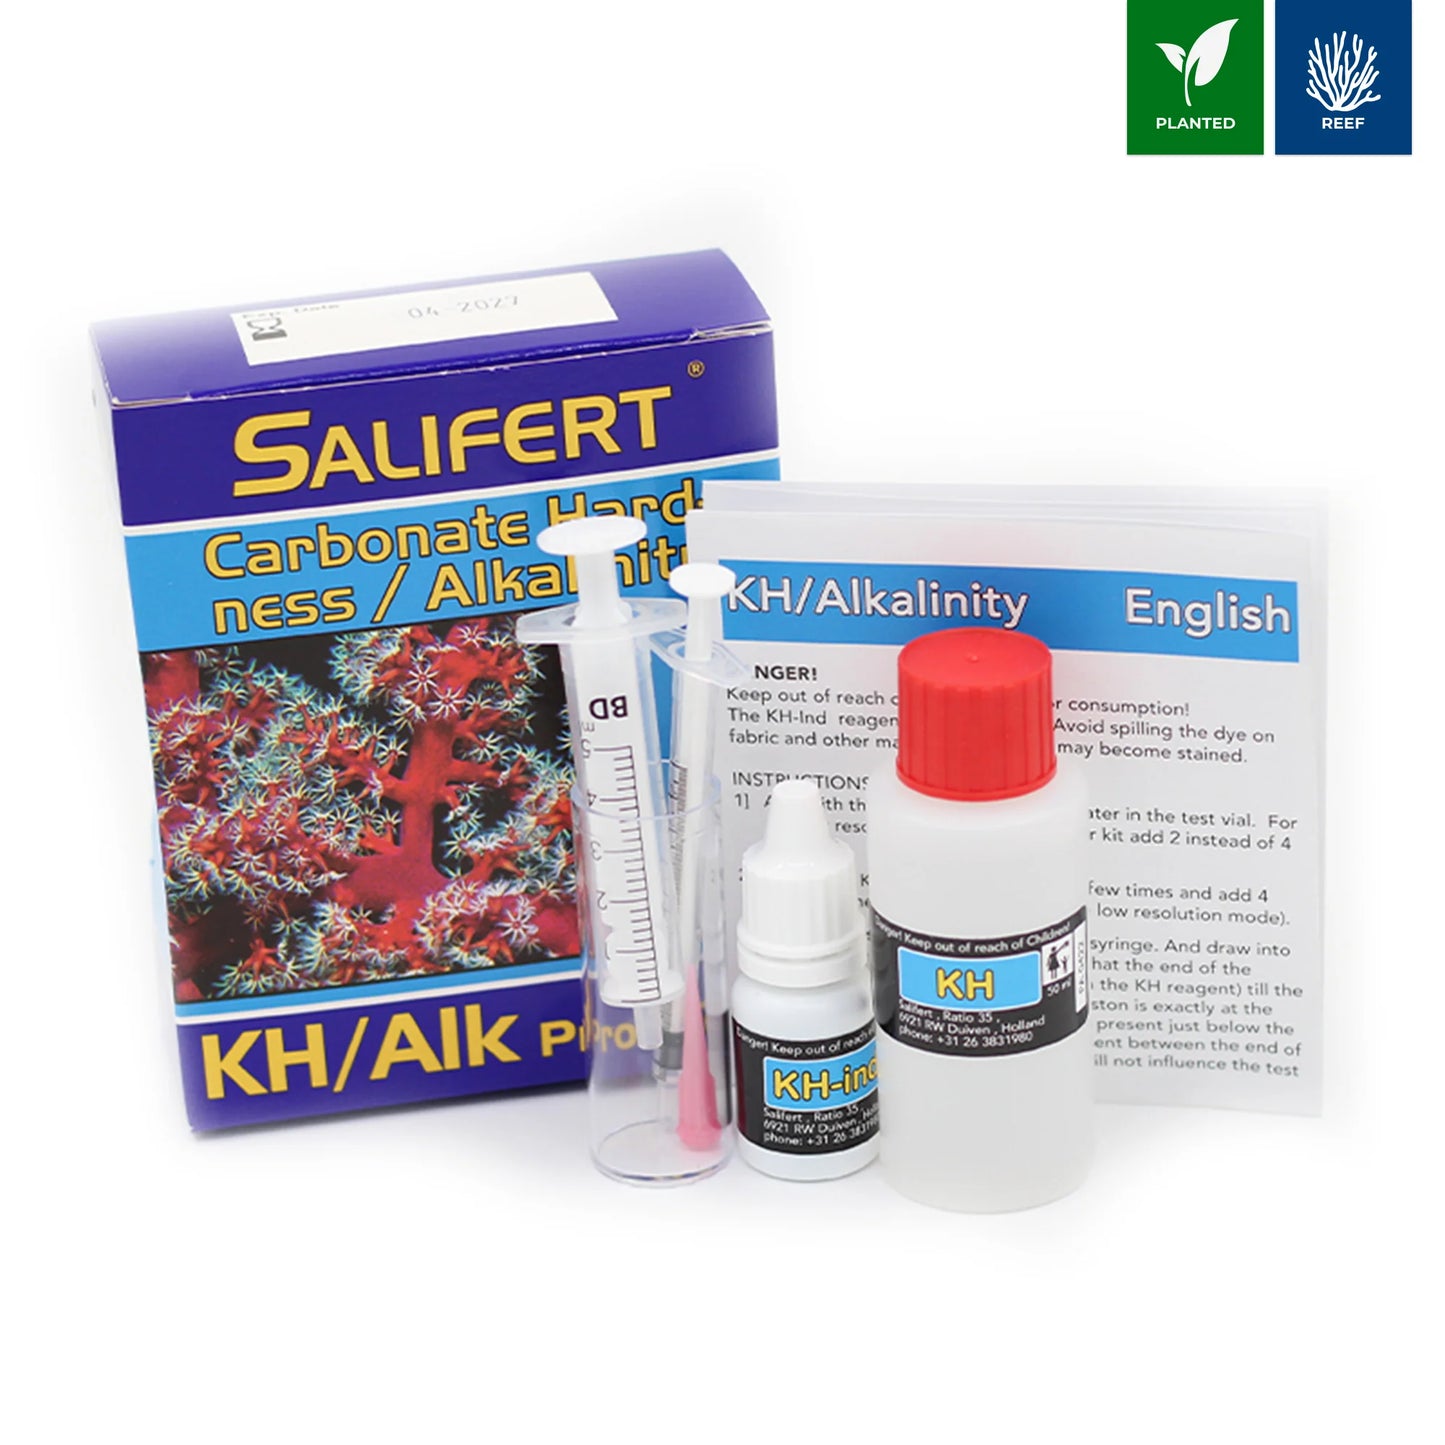 Salifert kH/Alk Carbonate Test - Marine